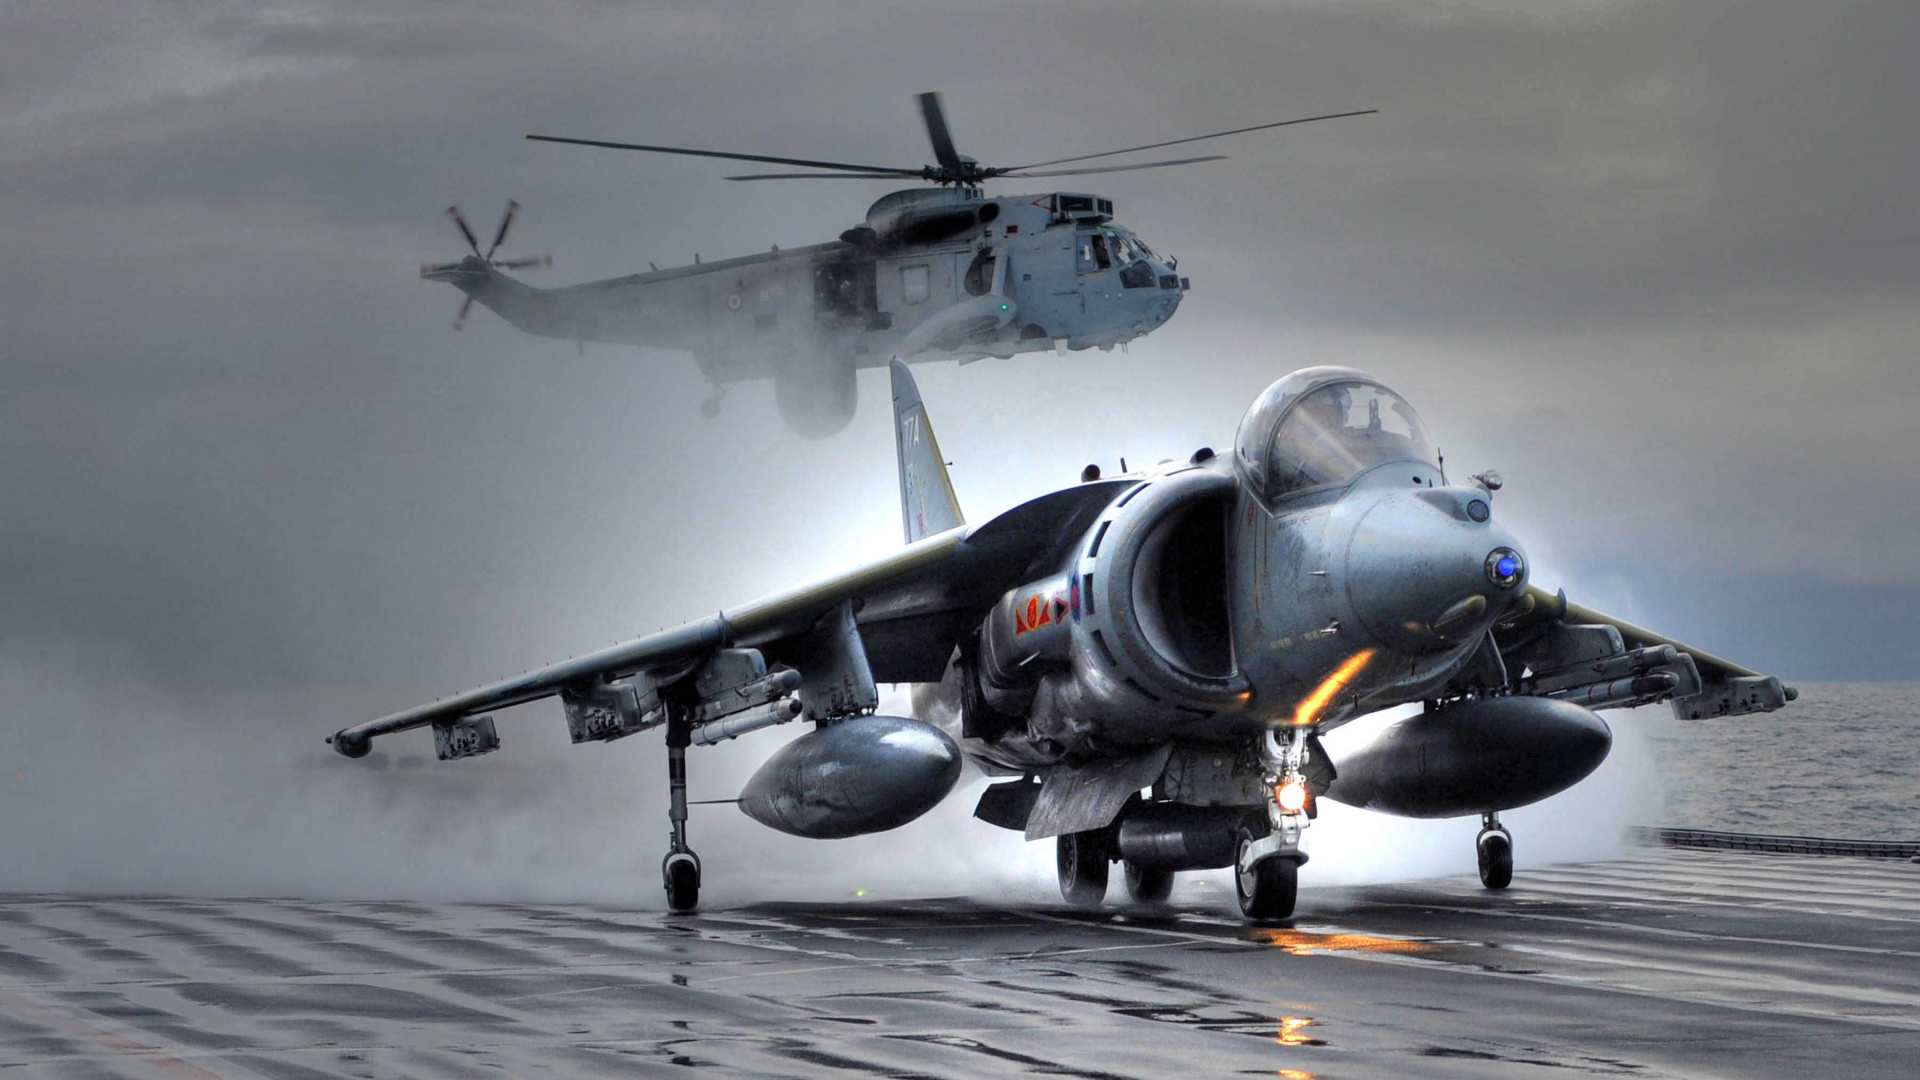 HMS方舟皇家, 麦克道格拉斯AV-8B Harrier II, 英国航空航天鹞II, 霍克*西德利鹞, 英国航空航天海鹞 壁纸 1920x1080 允许